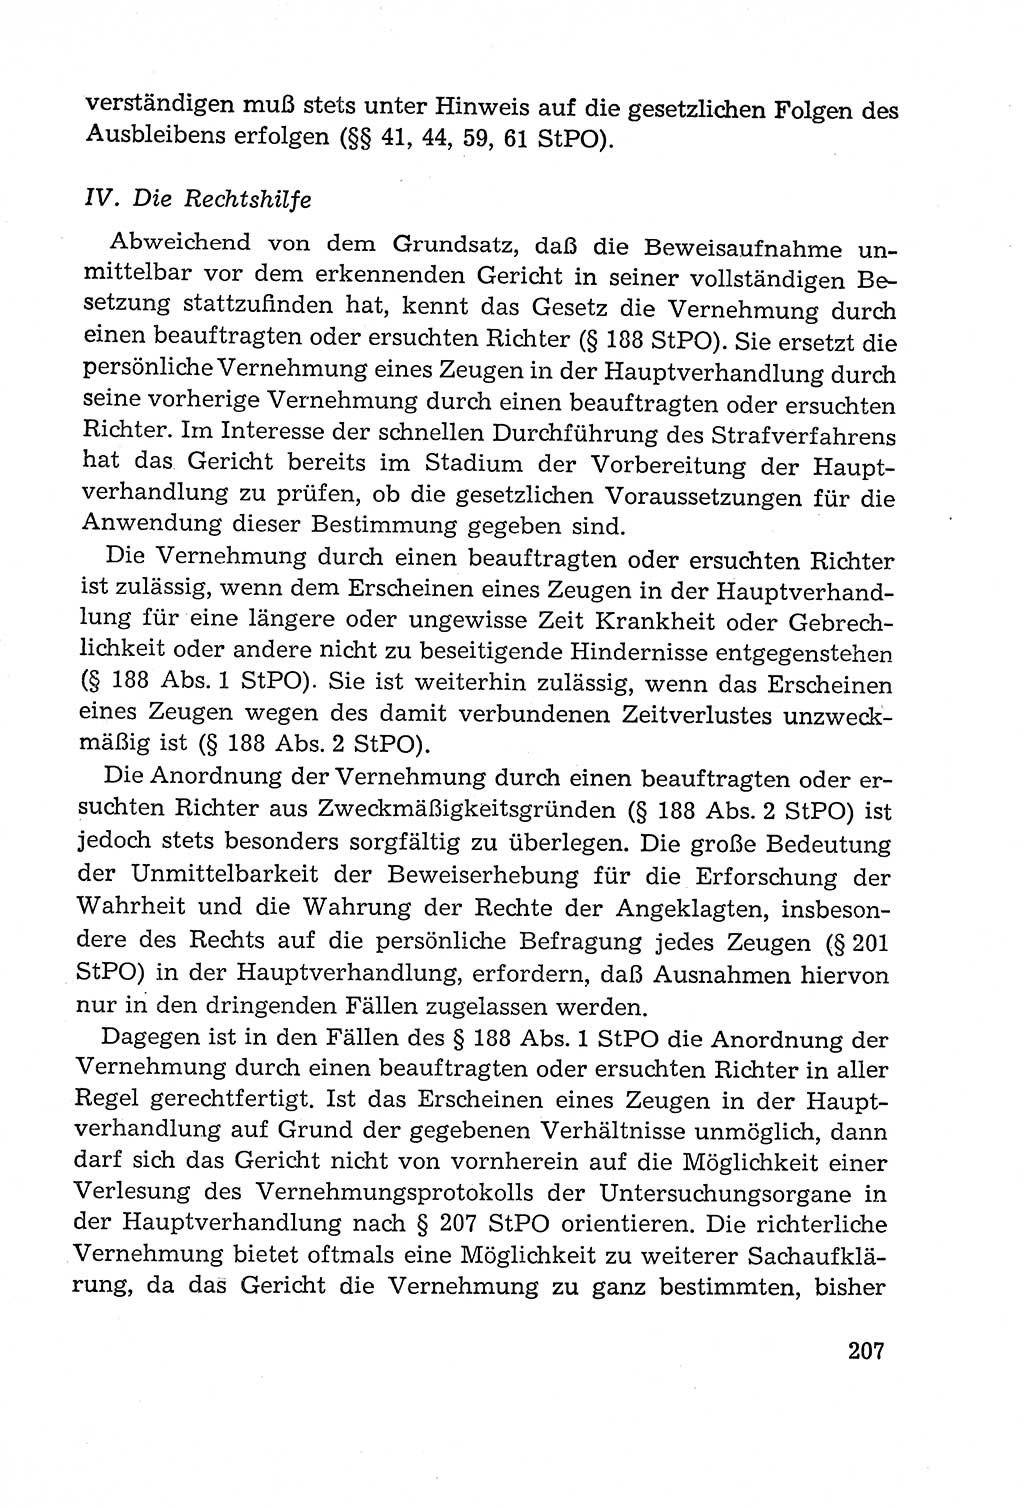 Leitfaden des Strafprozeßrechts der Deutschen Demokratischen Republik (DDR) 1959, Seite 207 (LF StPR DDR 1959, S. 207)